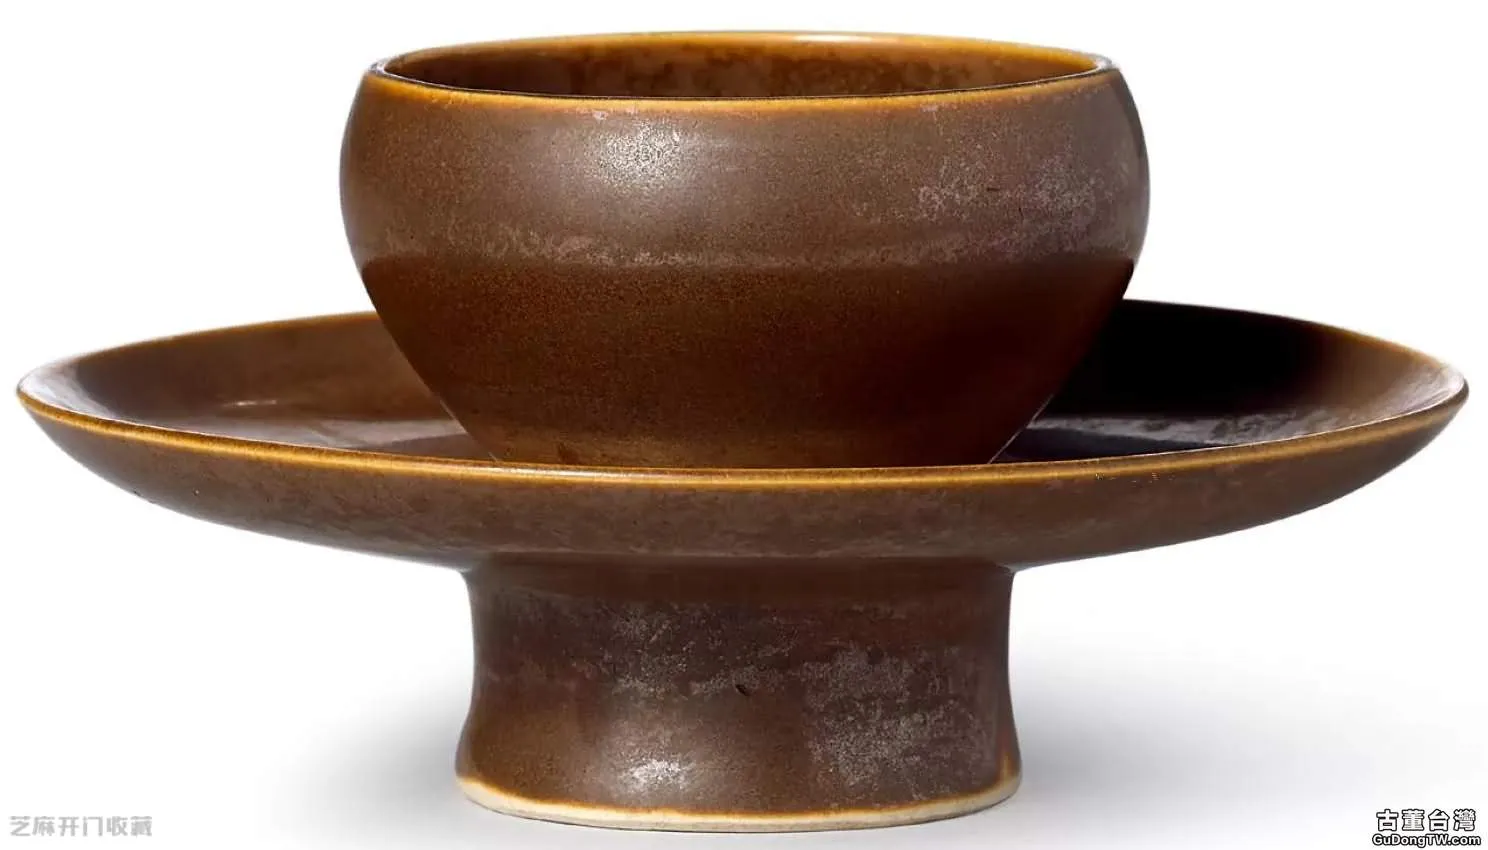 宋代醬釉瓷器有哪些特徵